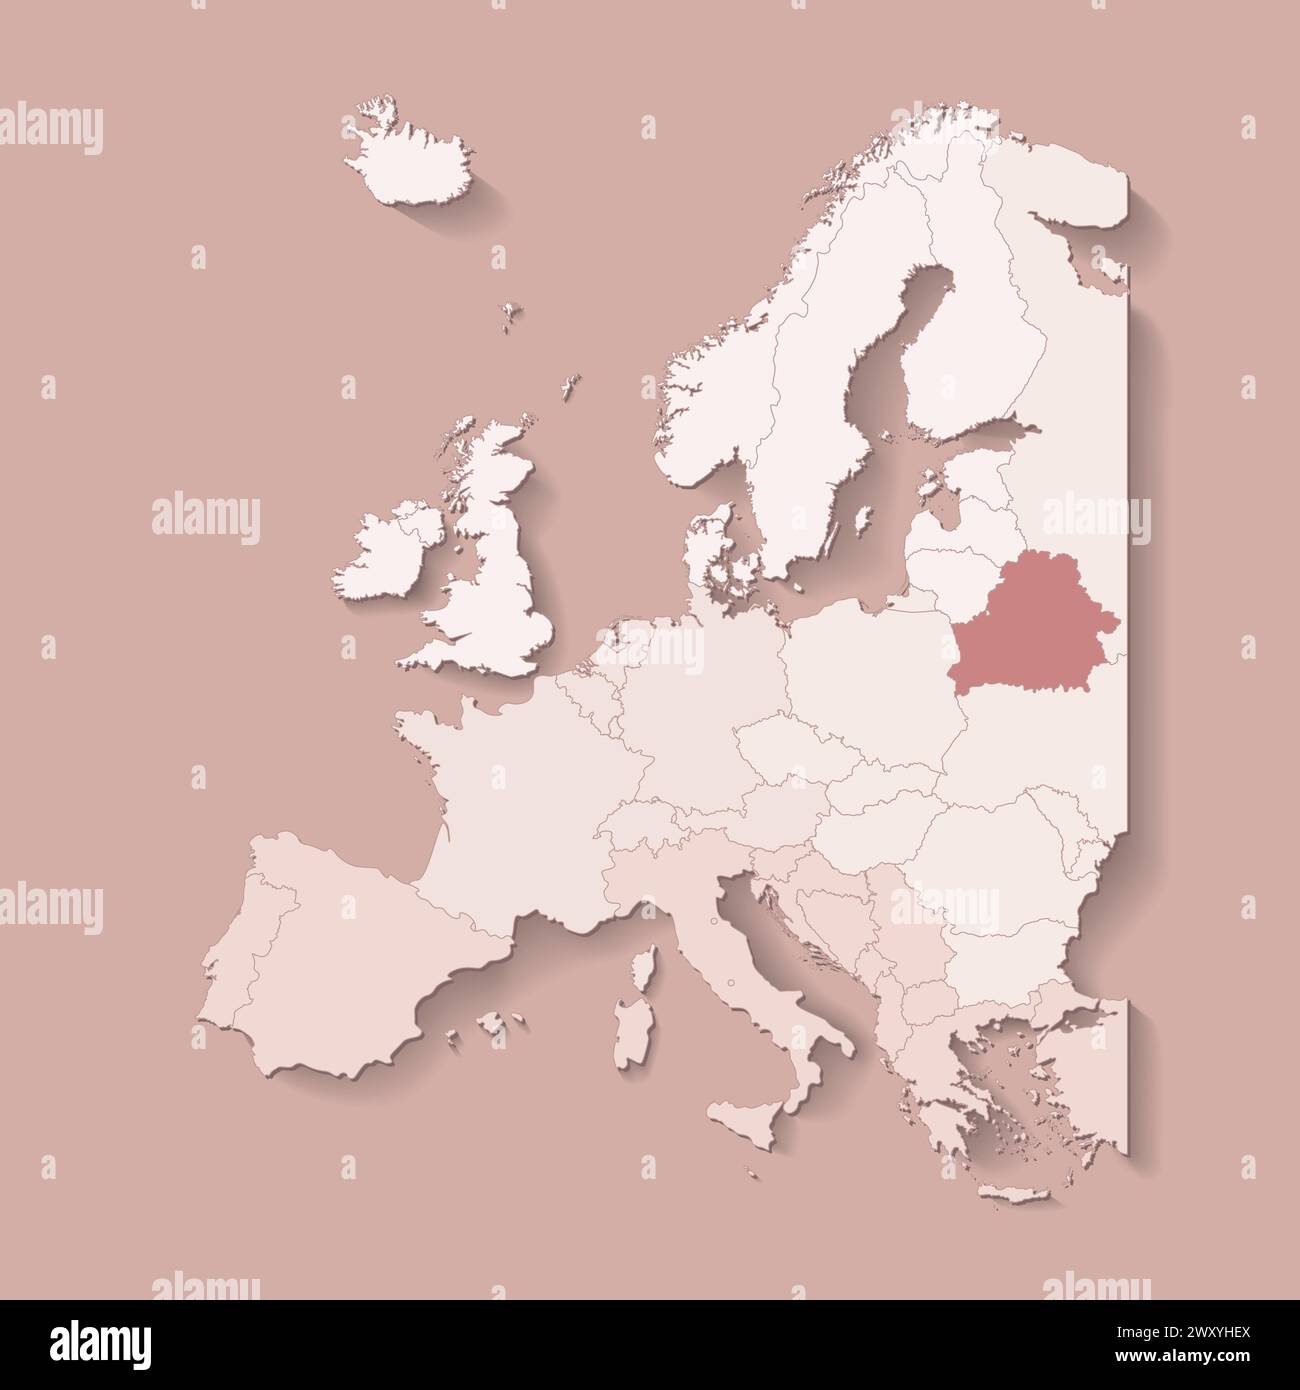 Illustrazione vettoriale con terra europea con confini di stati e paese contrassegnato Bielorussia. Mappa politica di colore marrone con occidentale, sud e così via Illustrazione Vettoriale